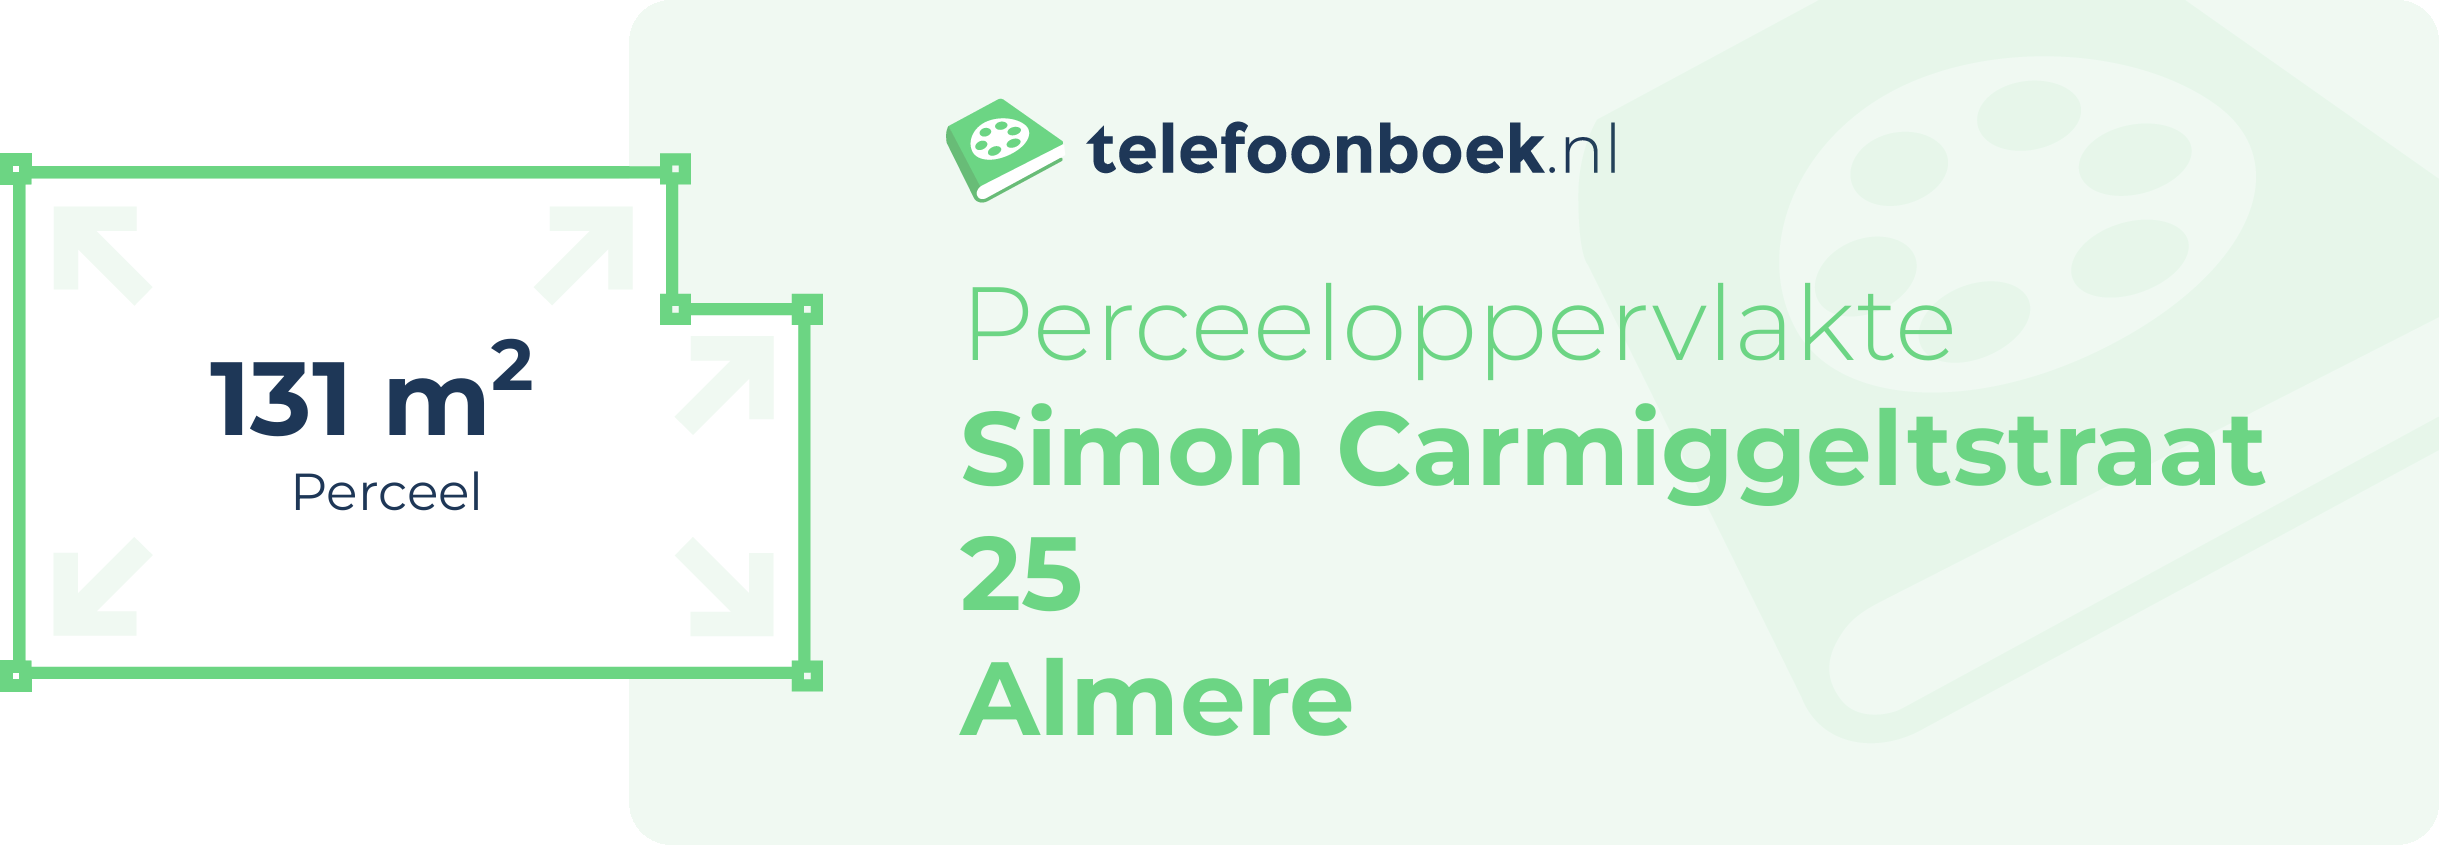 Perceeloppervlakte Simon Carmiggeltstraat 25 Almere